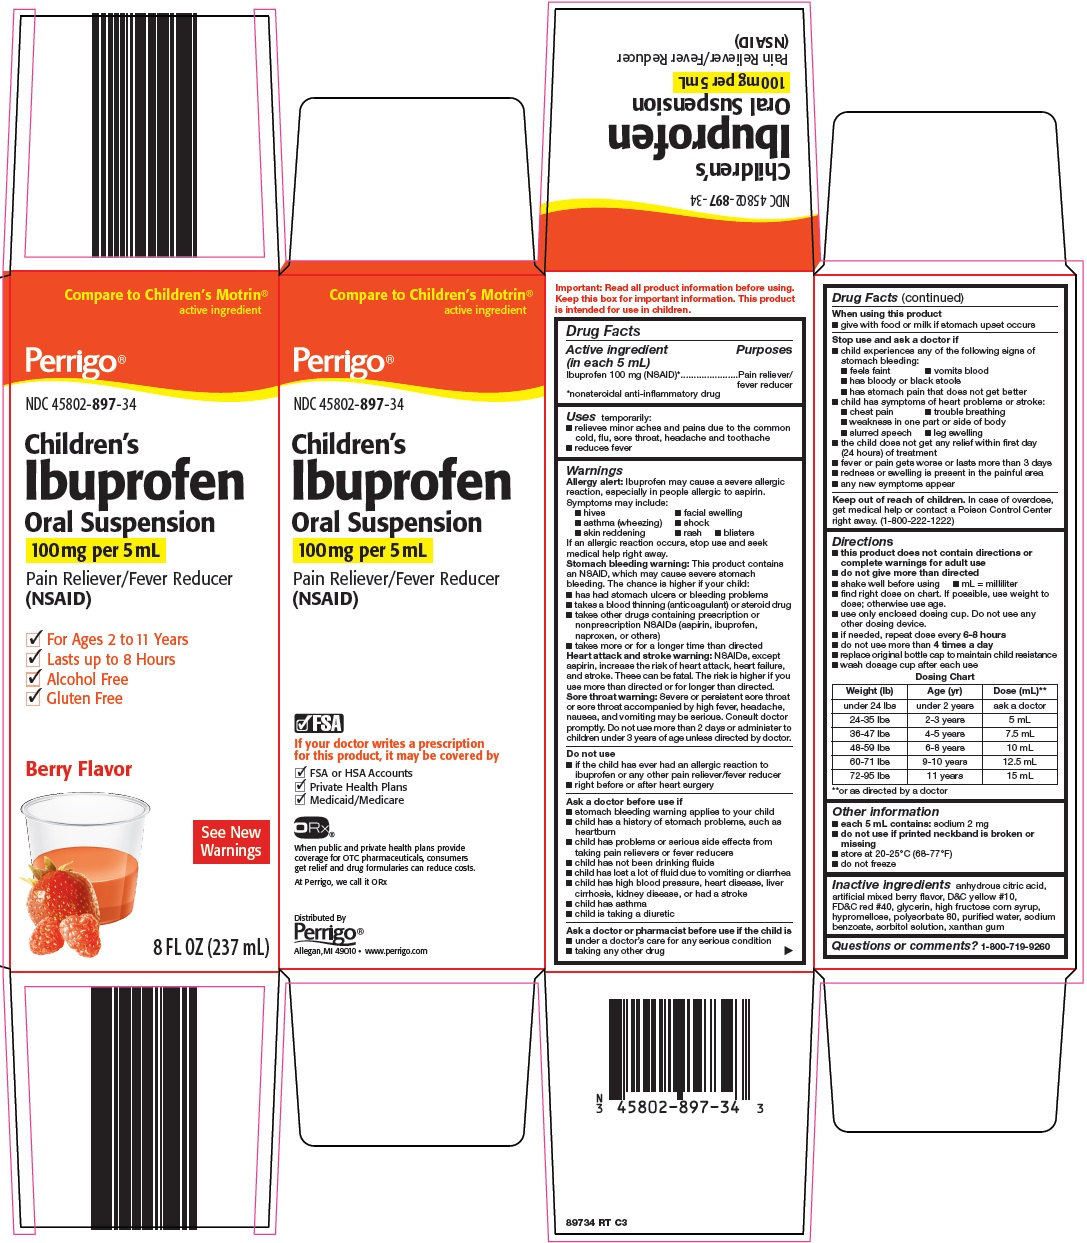 897-rt-ibuprofen.jpg